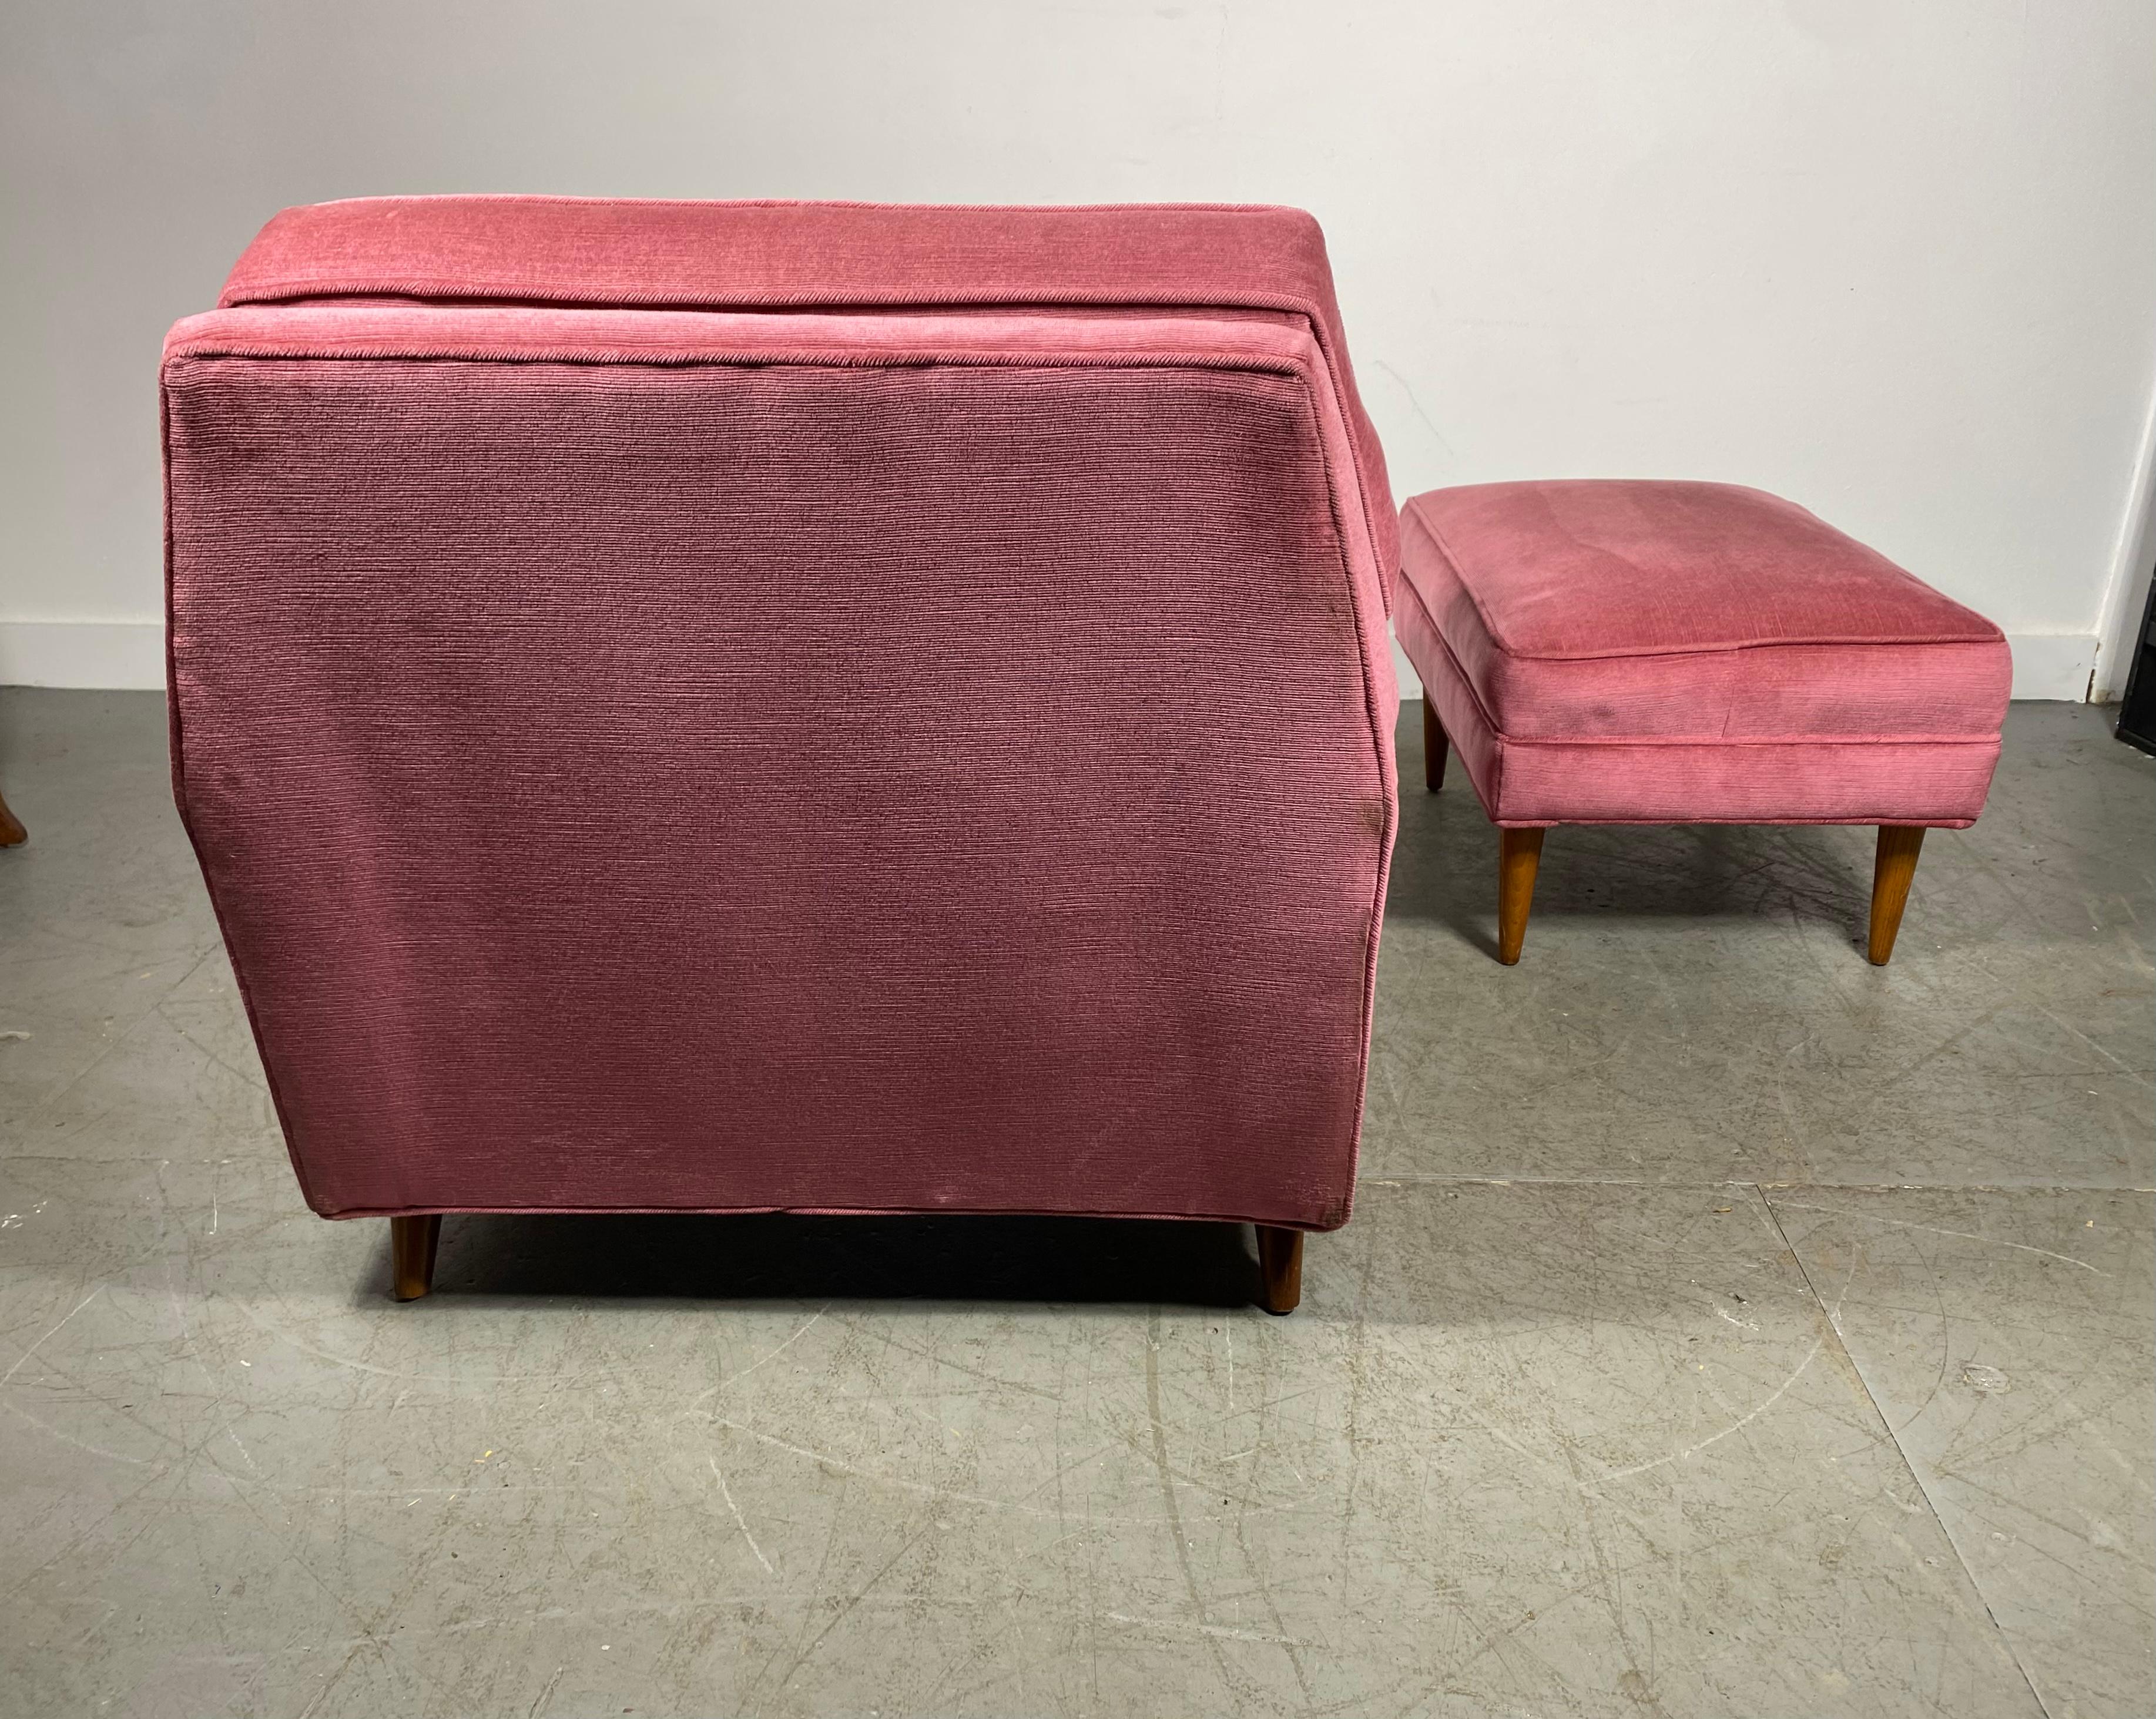 Stunning Modernist Lounge Chair & Ott Oman by Roger Springer for Dunbar For Sale 2